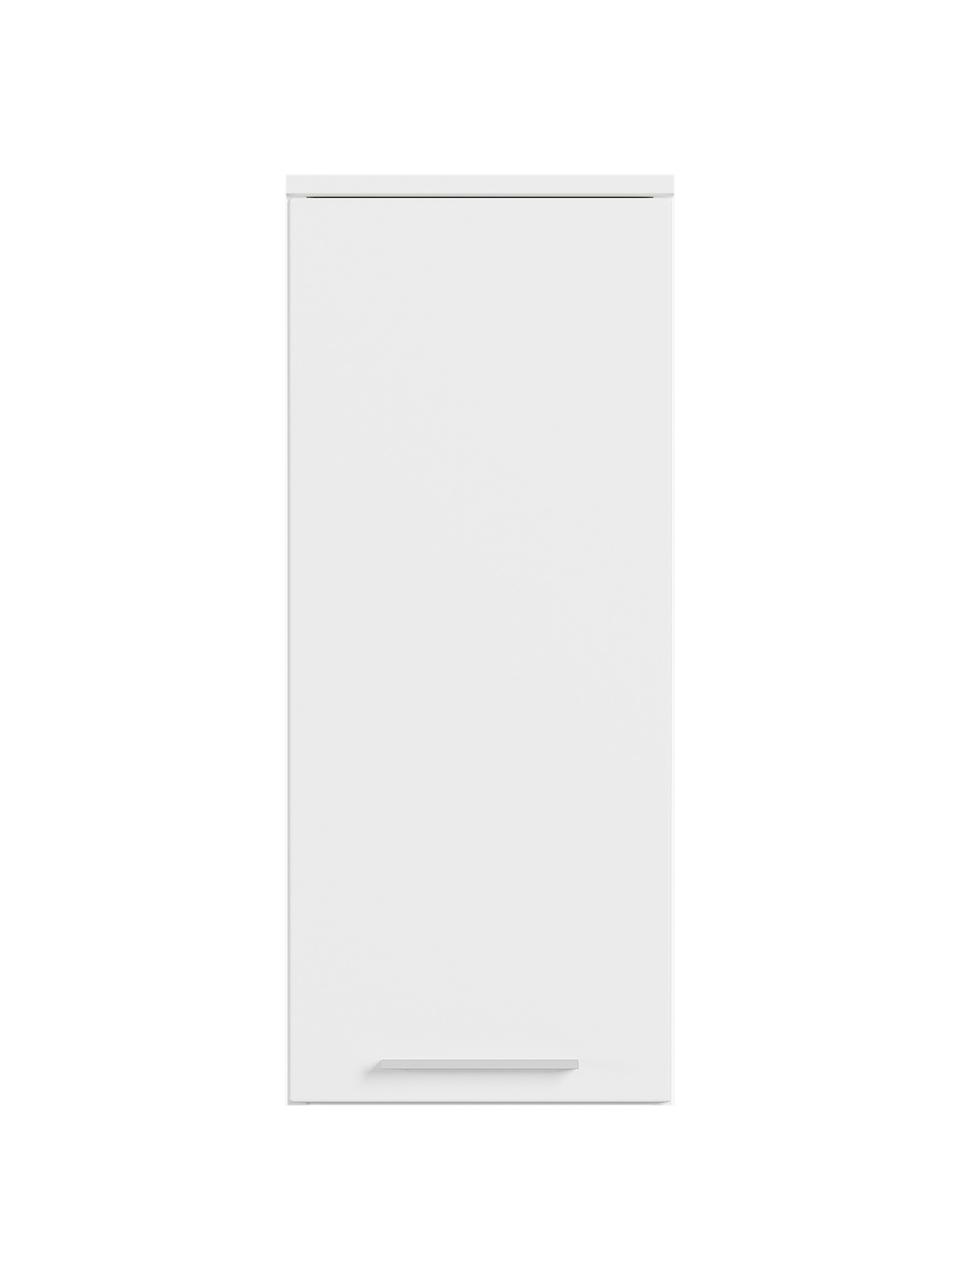 Badkamer bovenkast Arvada, B 30 cm, Wit, zilverkleurig, B 30 cm x H 73 cm